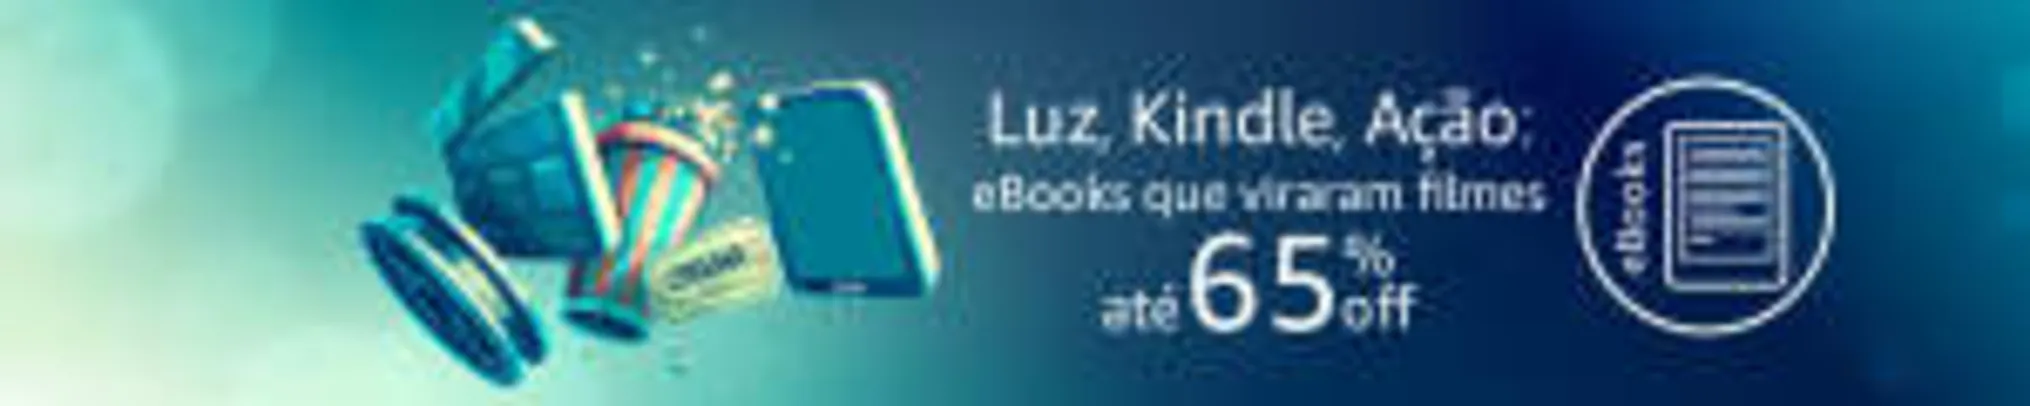 Promoção de ebooks na Amazon